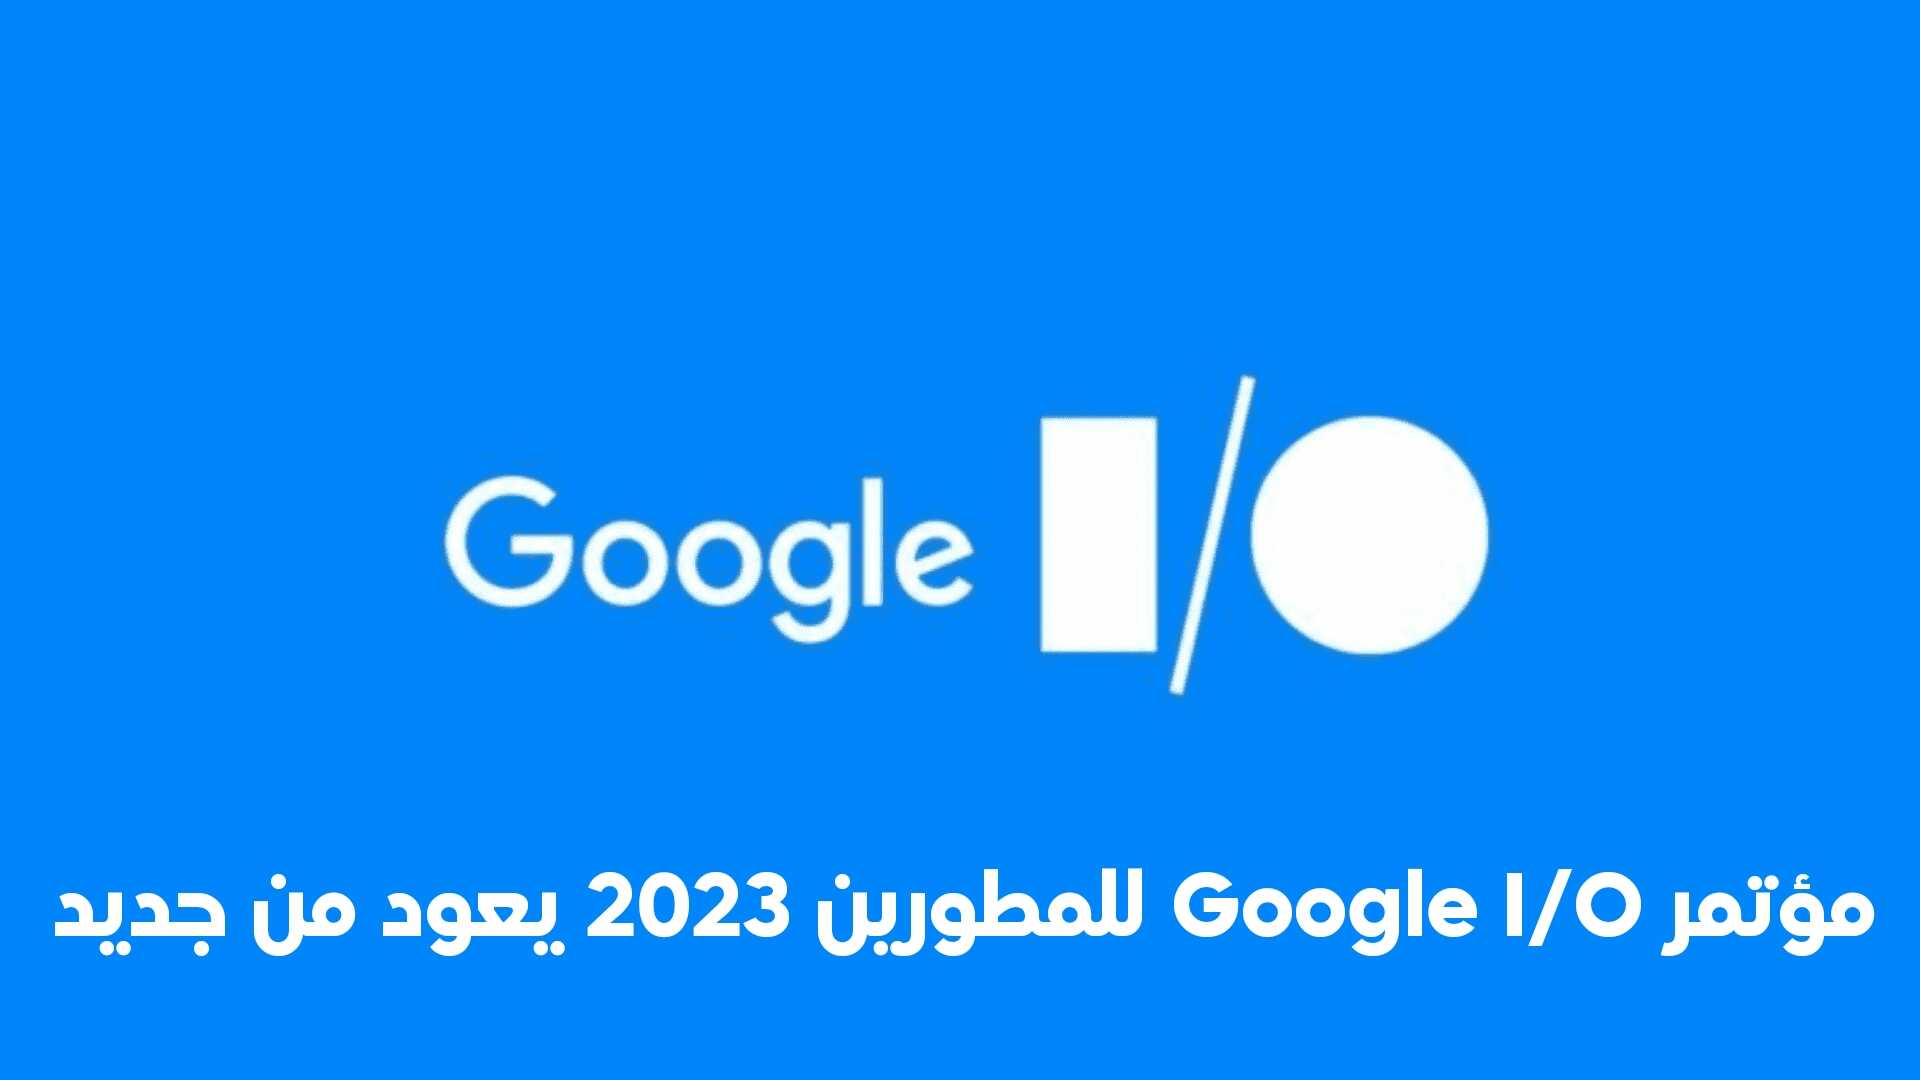 مؤتمر Google I/O للمطورين 2023 يعود من جديد في 10 مايو بعد أنقطاع بسبب الجائحة